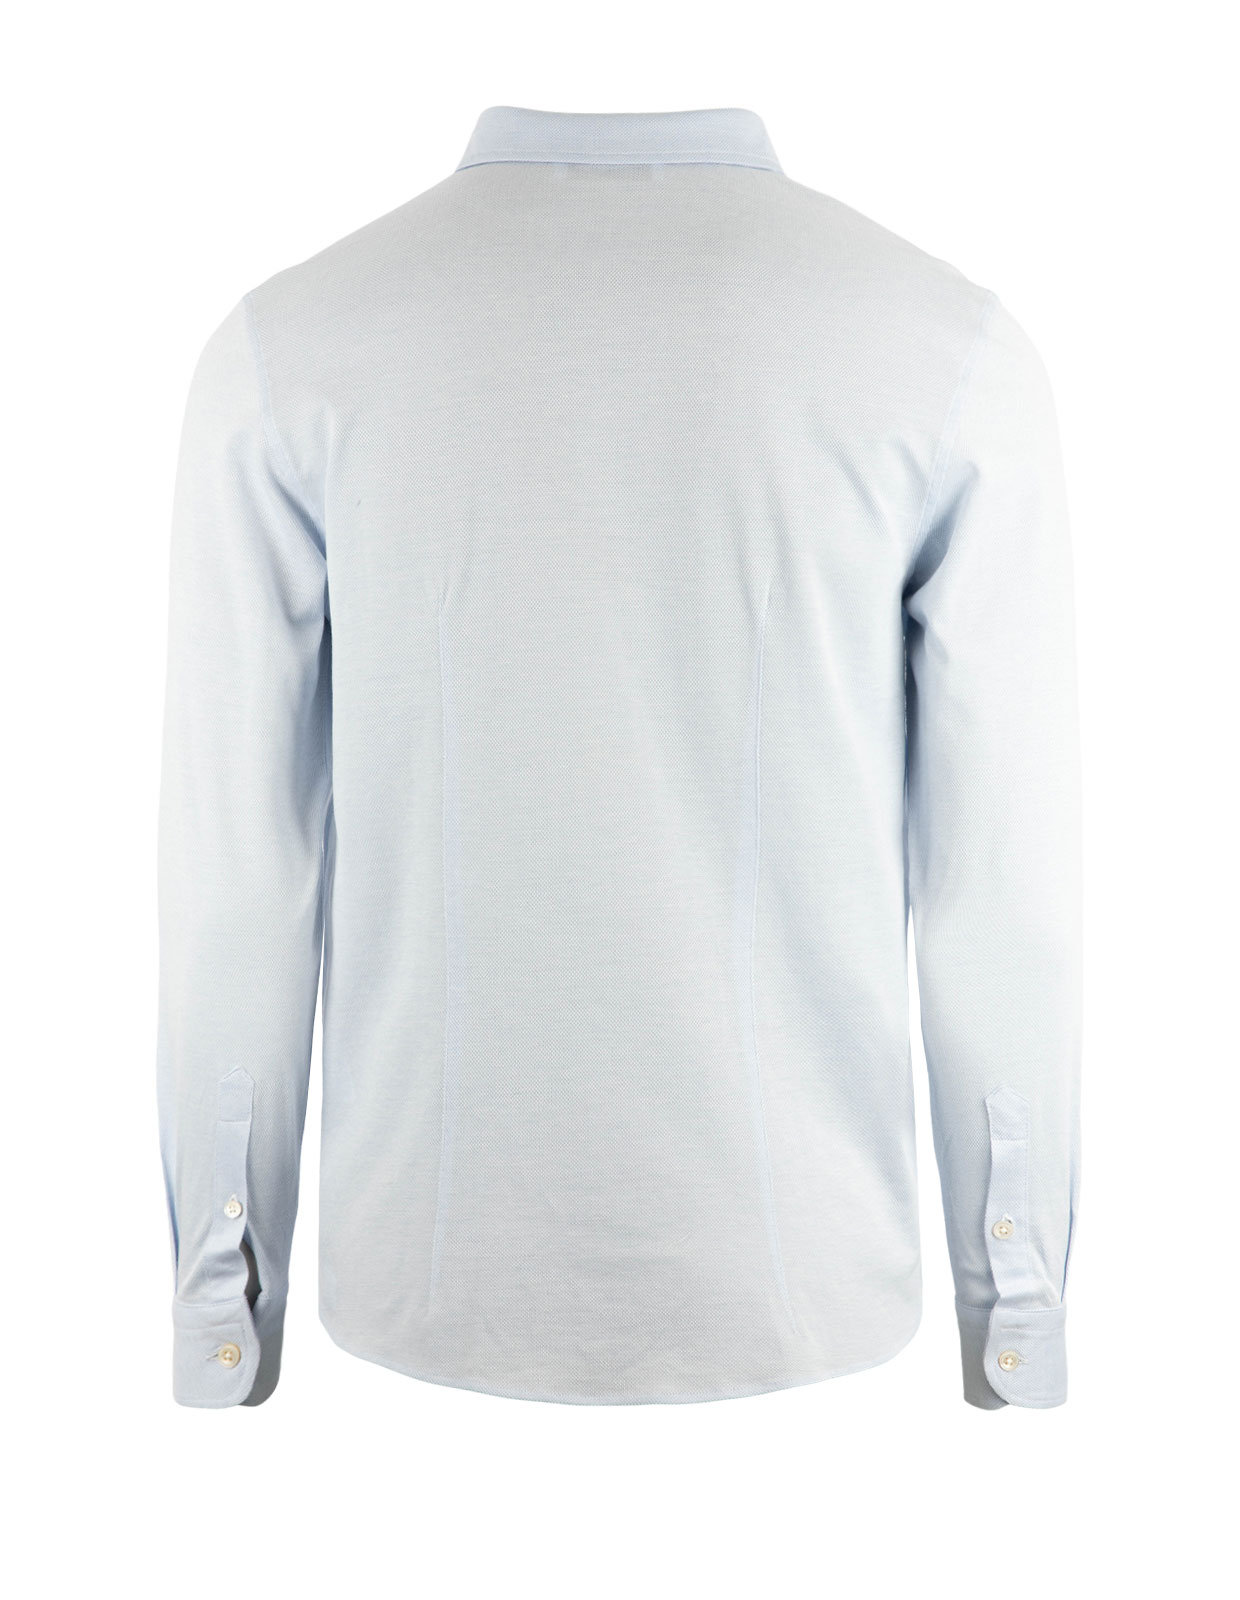 Jerseyskjorta Bomullspiké Ljusblå Stl 56